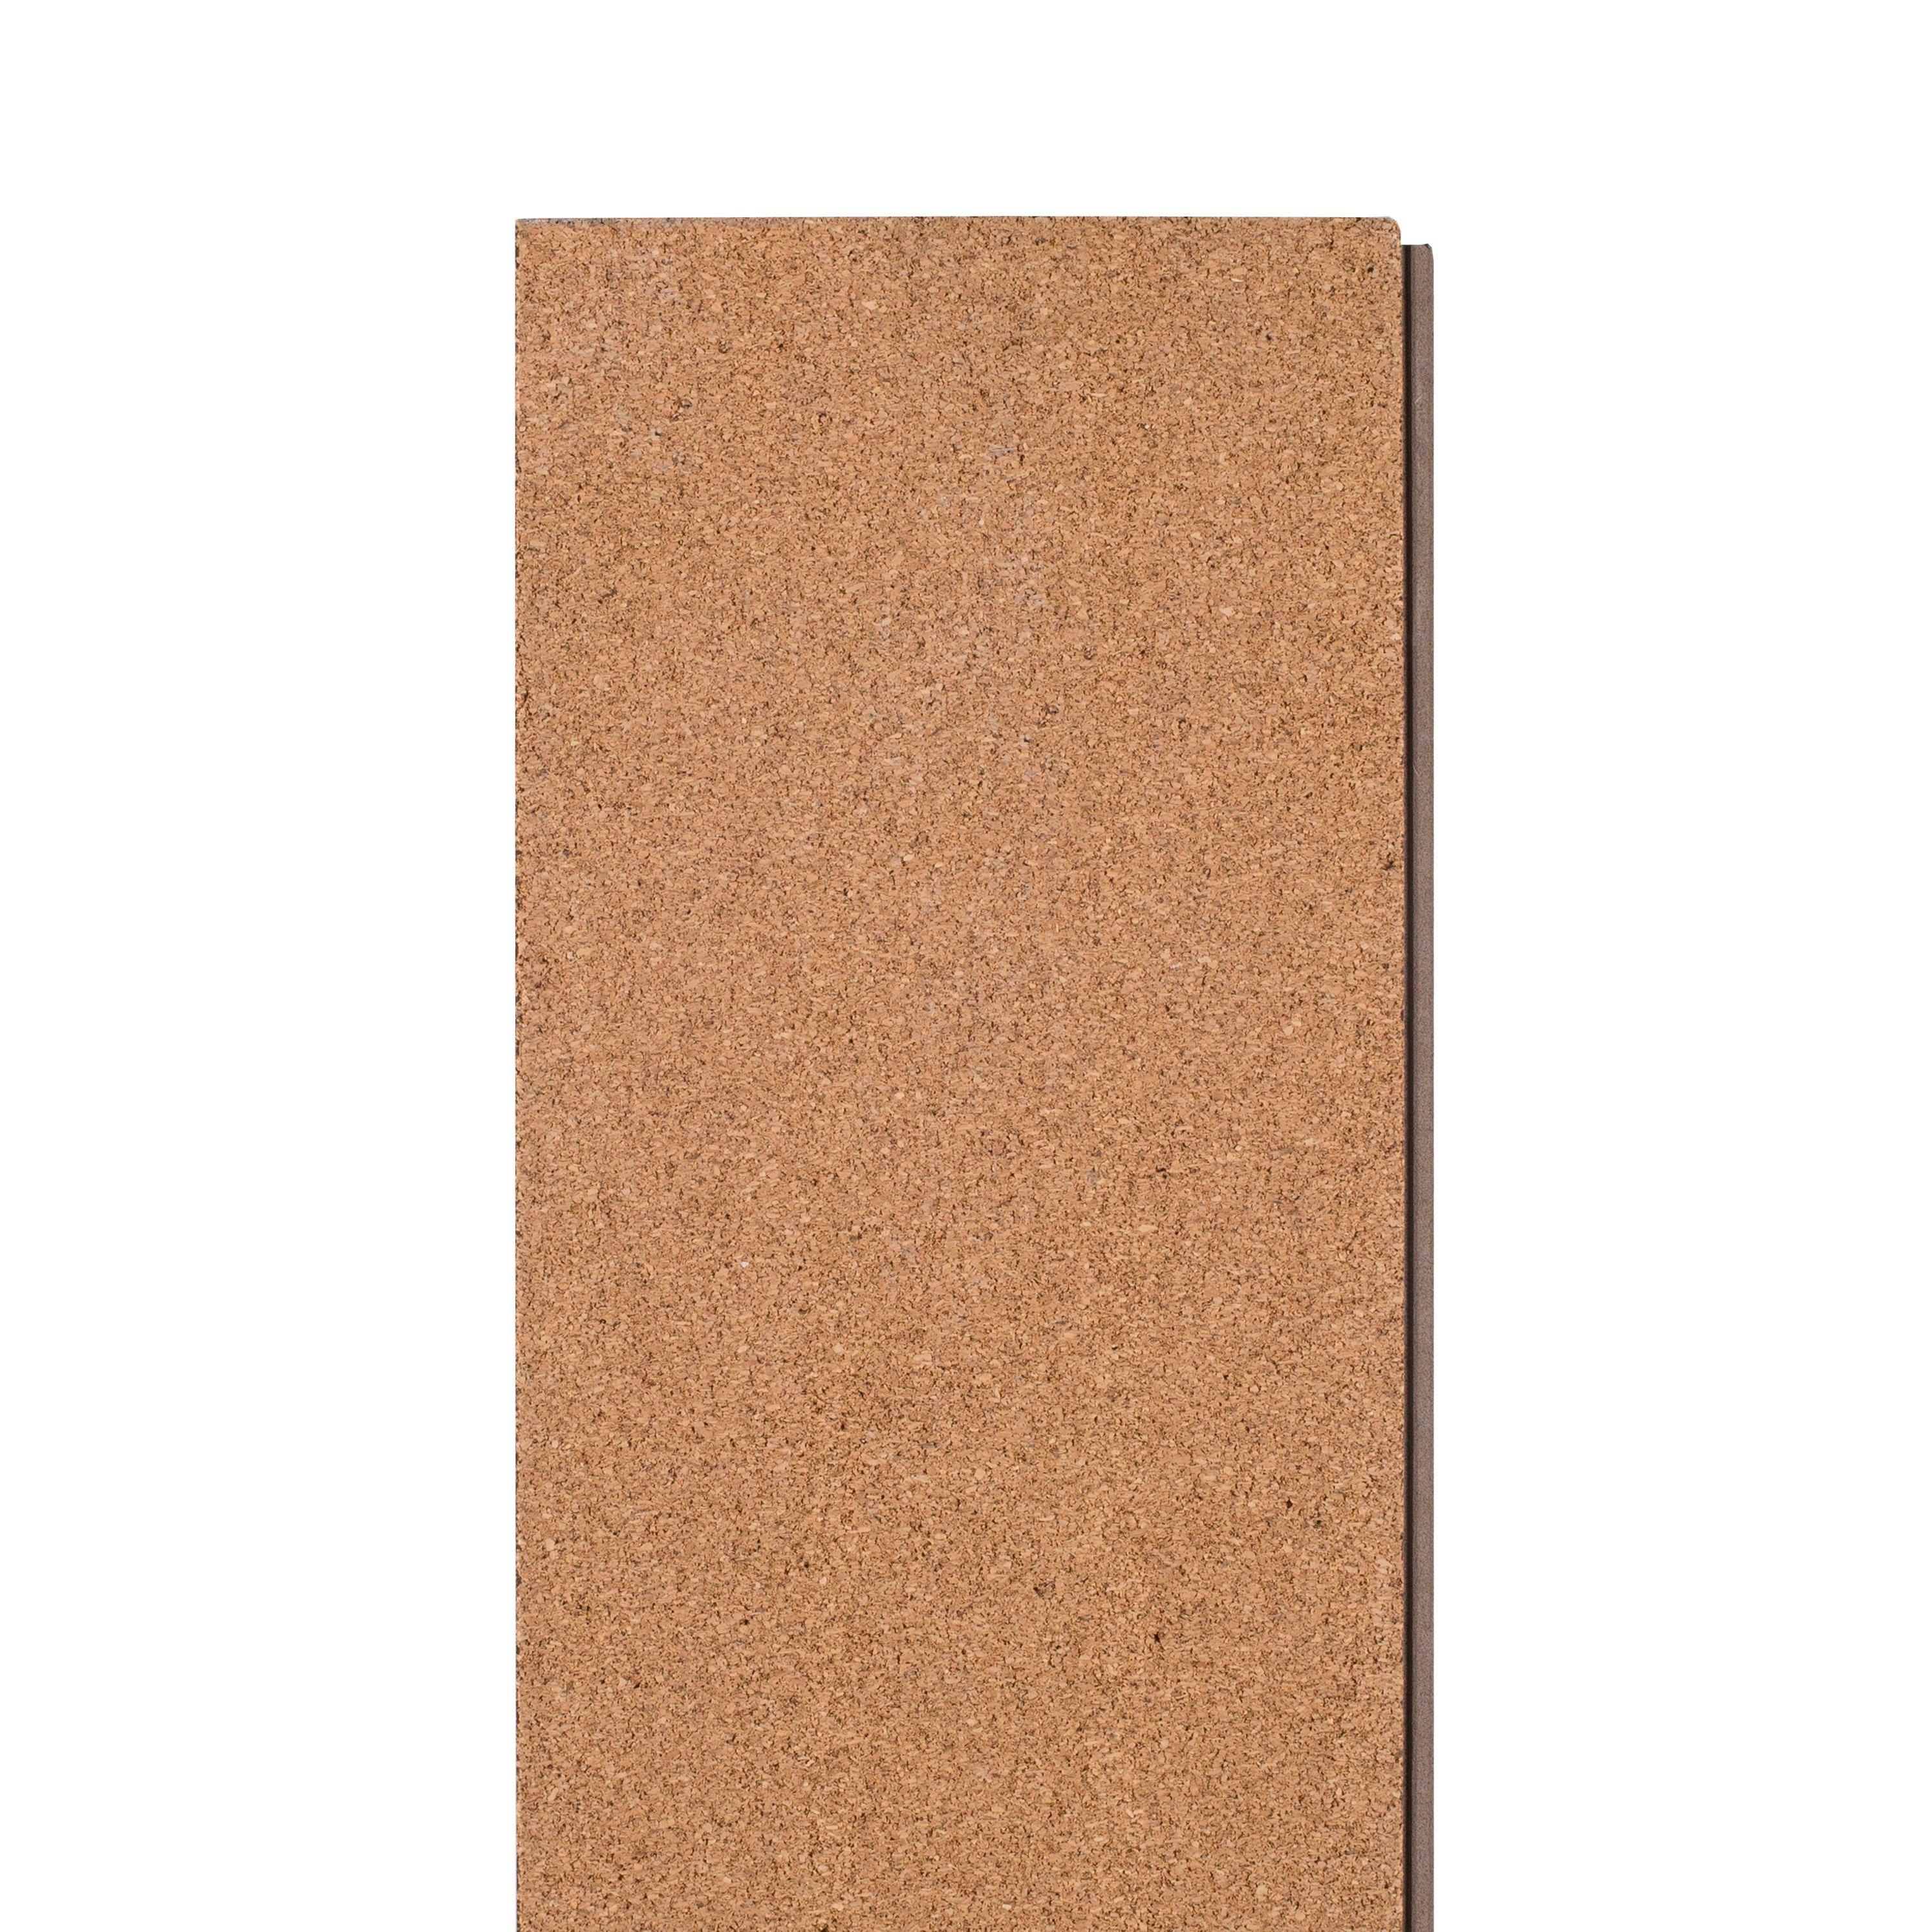 Coffee Oak Rigid Core Luxury Vinyl Plank - Cork Back